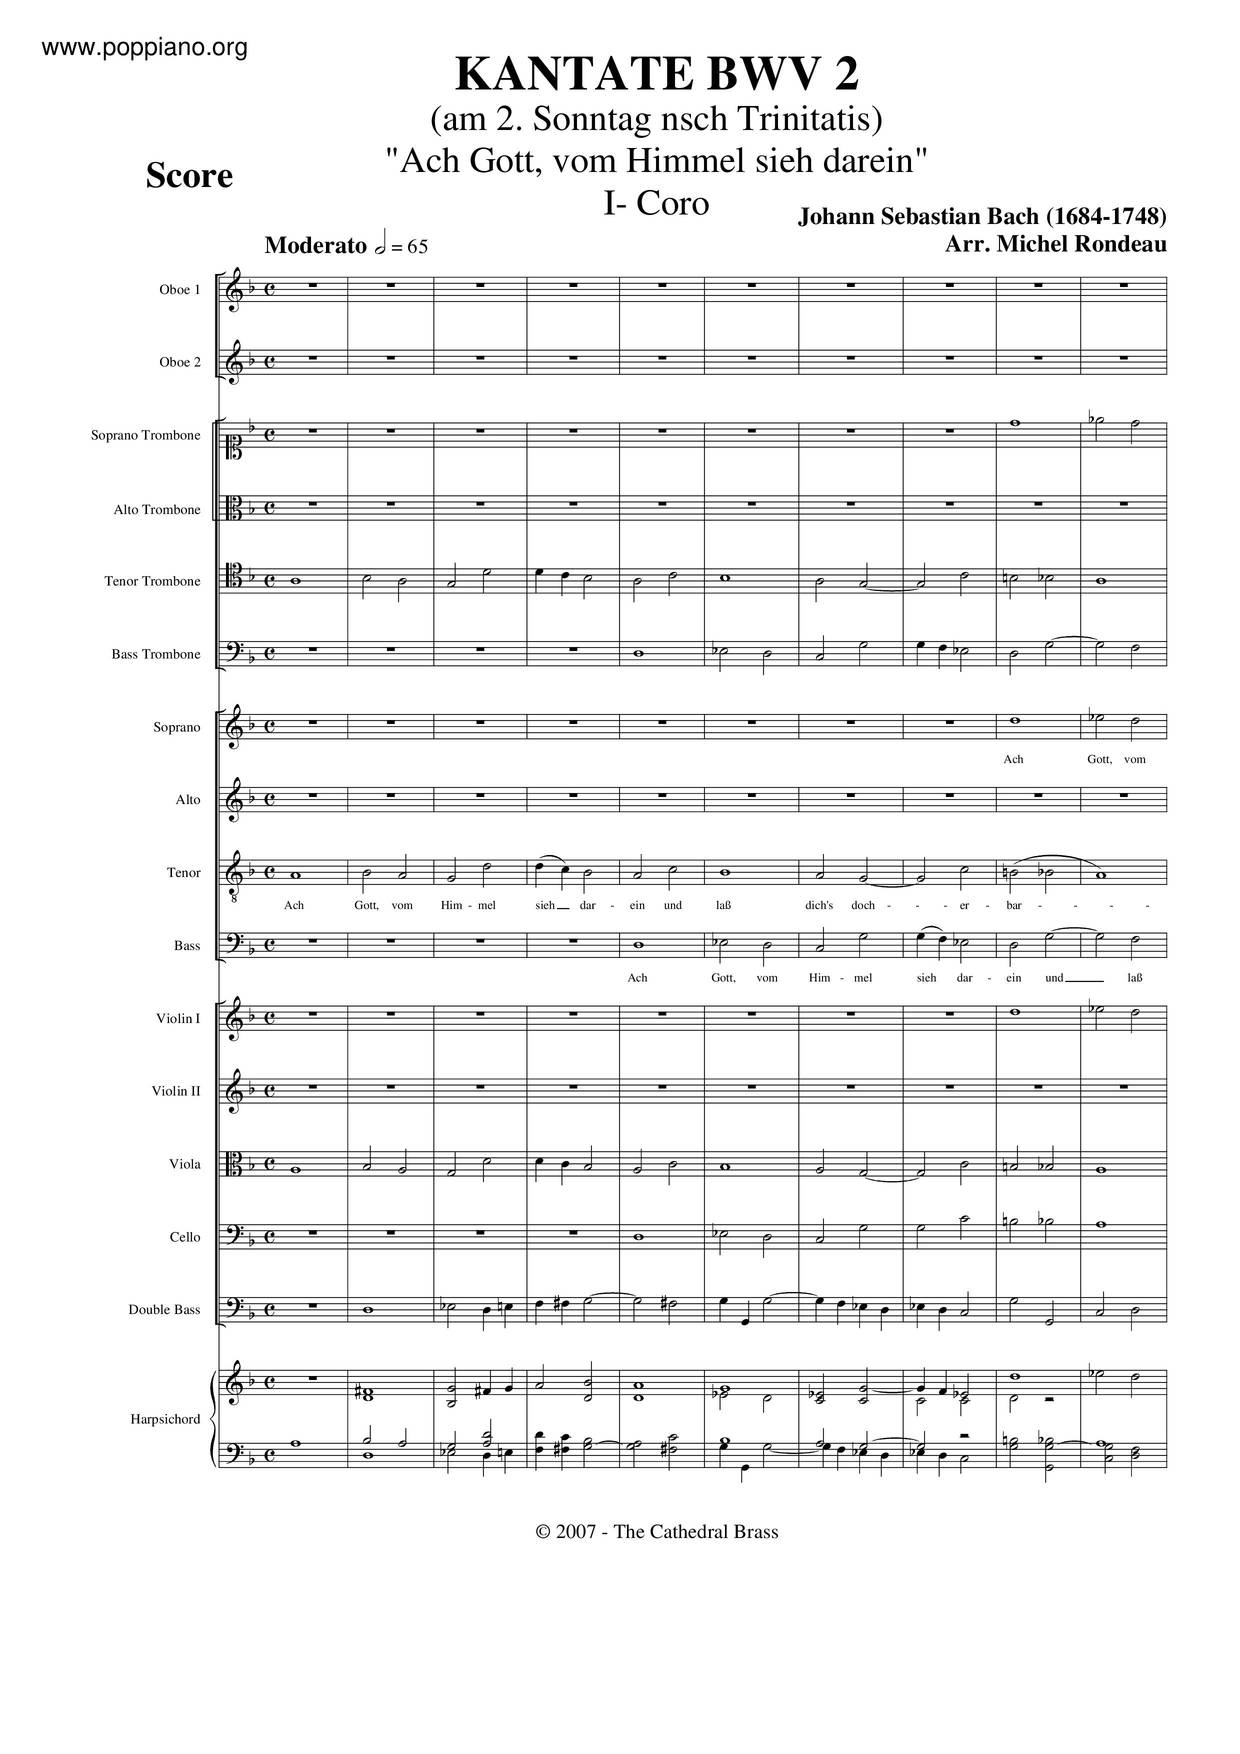 Ach Gott, Vom Himmel Sieh Darein, BWV 2 Score